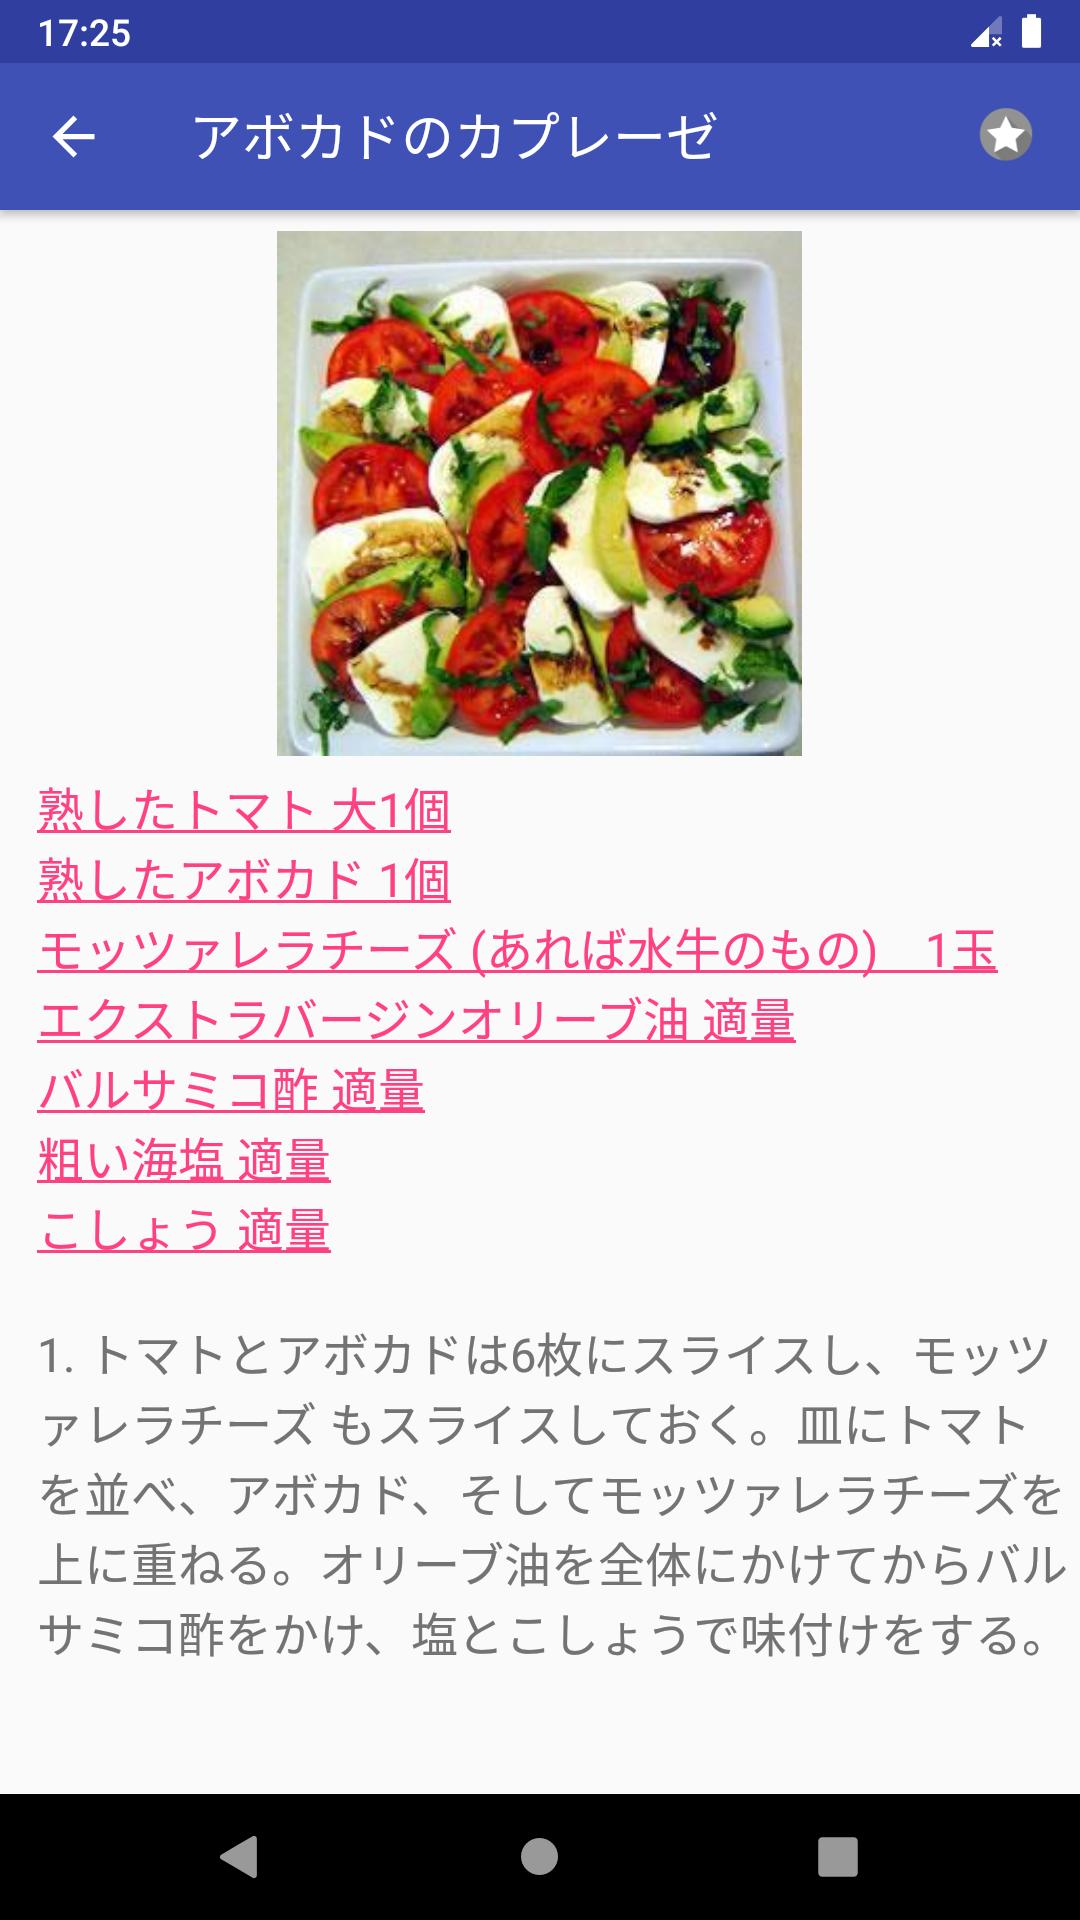 乳製品のレシピアプリオフライン 日本料理レシピ For Android Apk Download